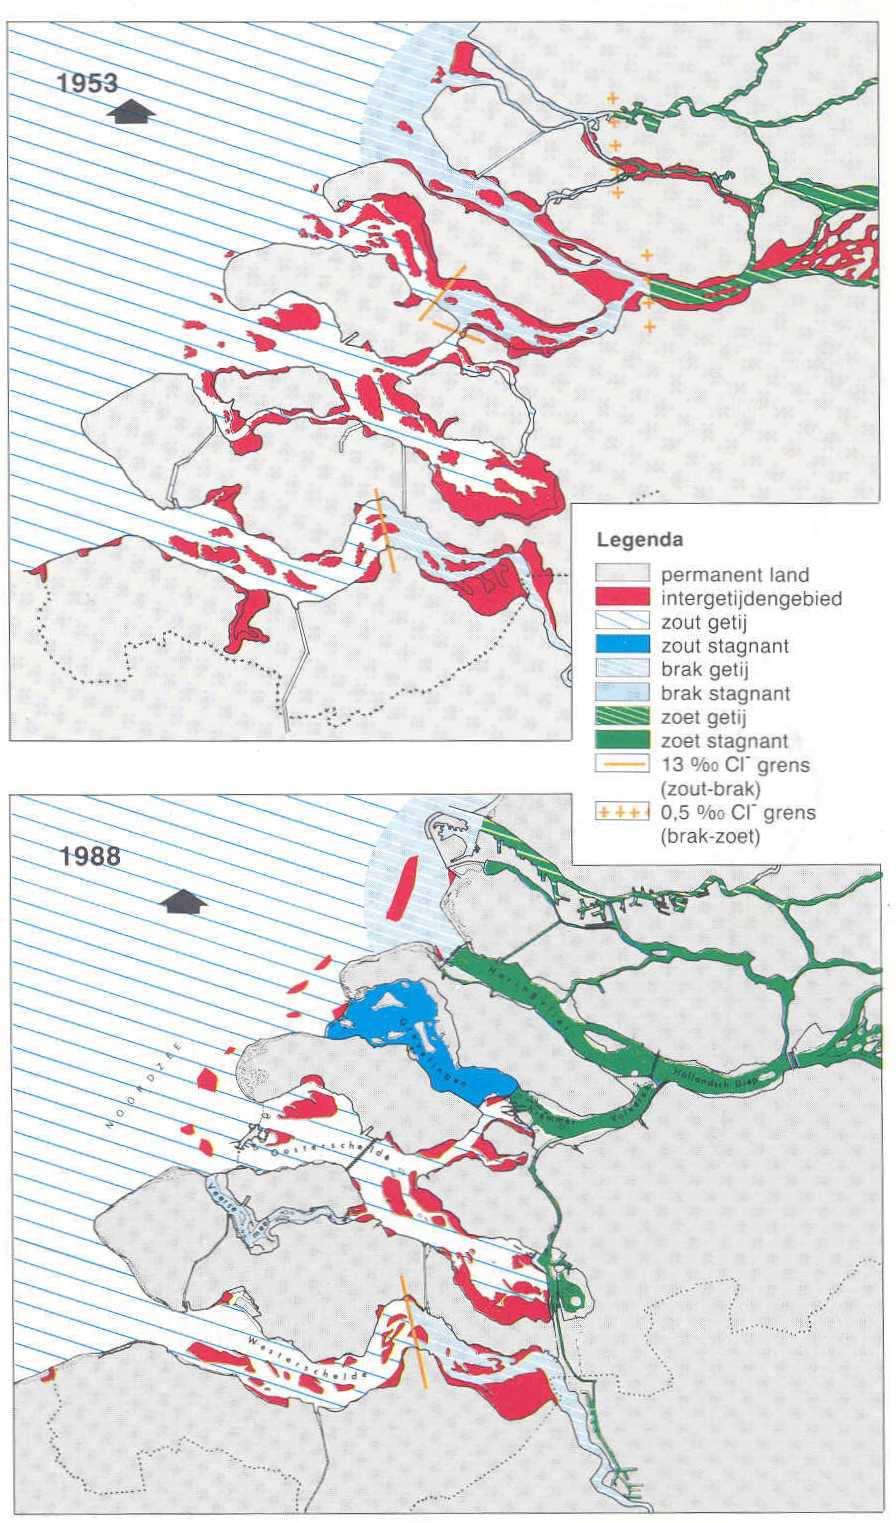 Figuur 32. Voorkomen van verschillende systeemtypes en habitattypes in 1953 (voor de Deltawerken) en in 1988 (na aanleg van de Deltawerken) (Baptist et al., 1988).